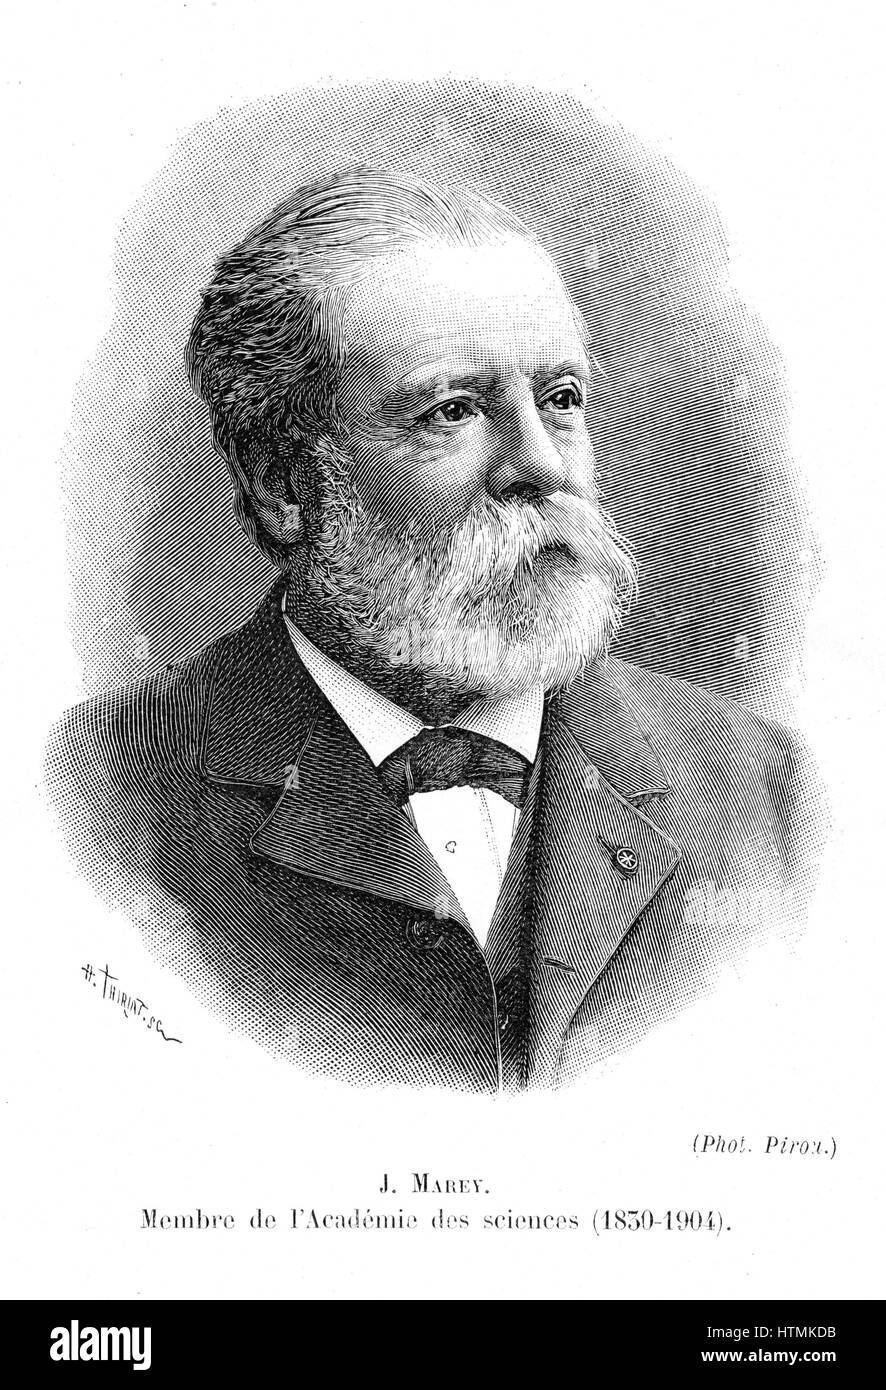 Etienne Jules Marey (1830-1903), physiologiste français. Pionnier de la cinématographie. Gravure, 1904 Banque D'Images